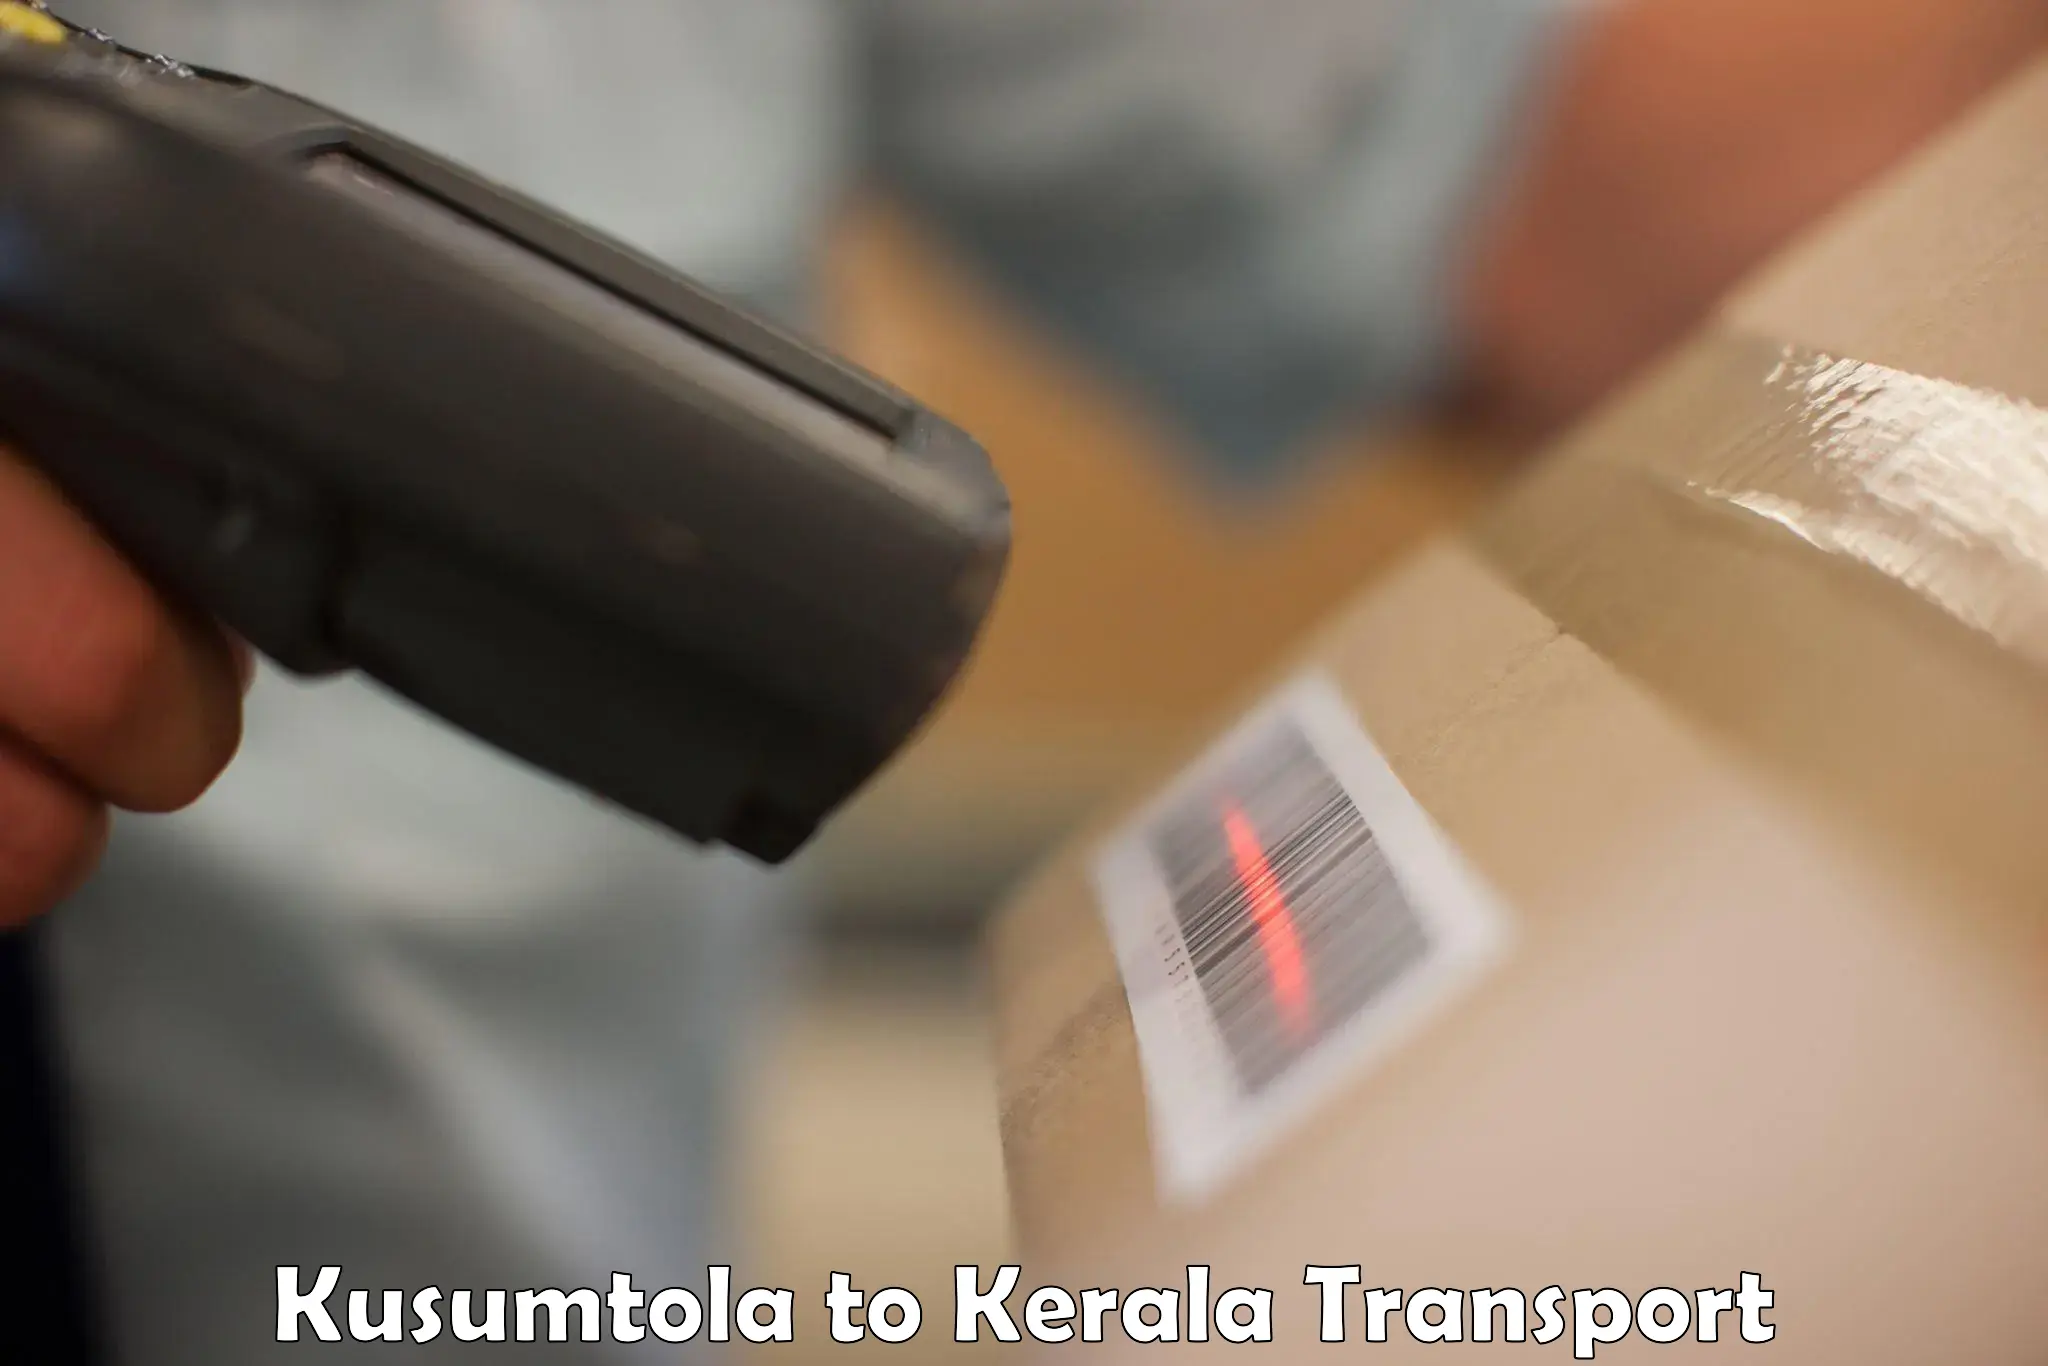 Furniture transport service Kusumtola to Thiruvananthapuram